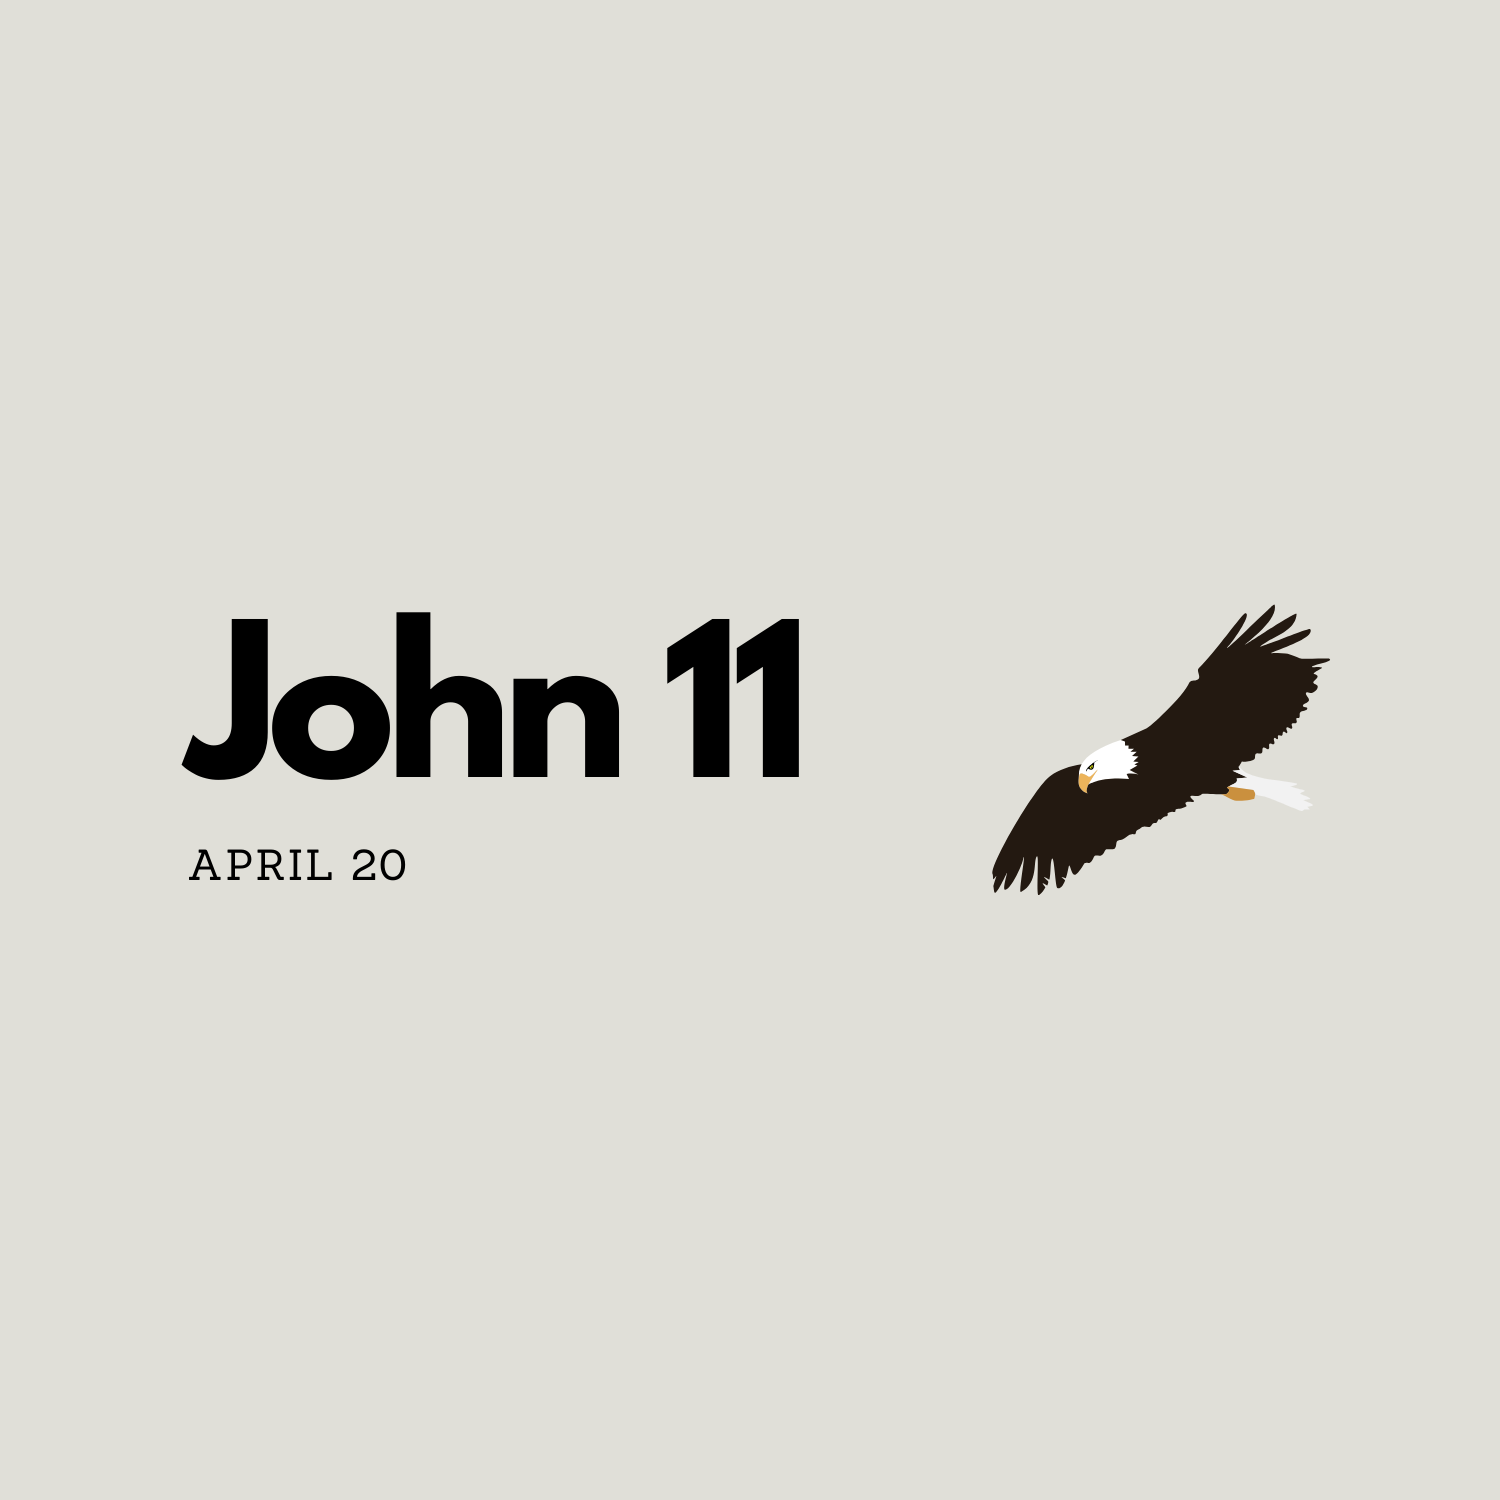 April 20: John 11